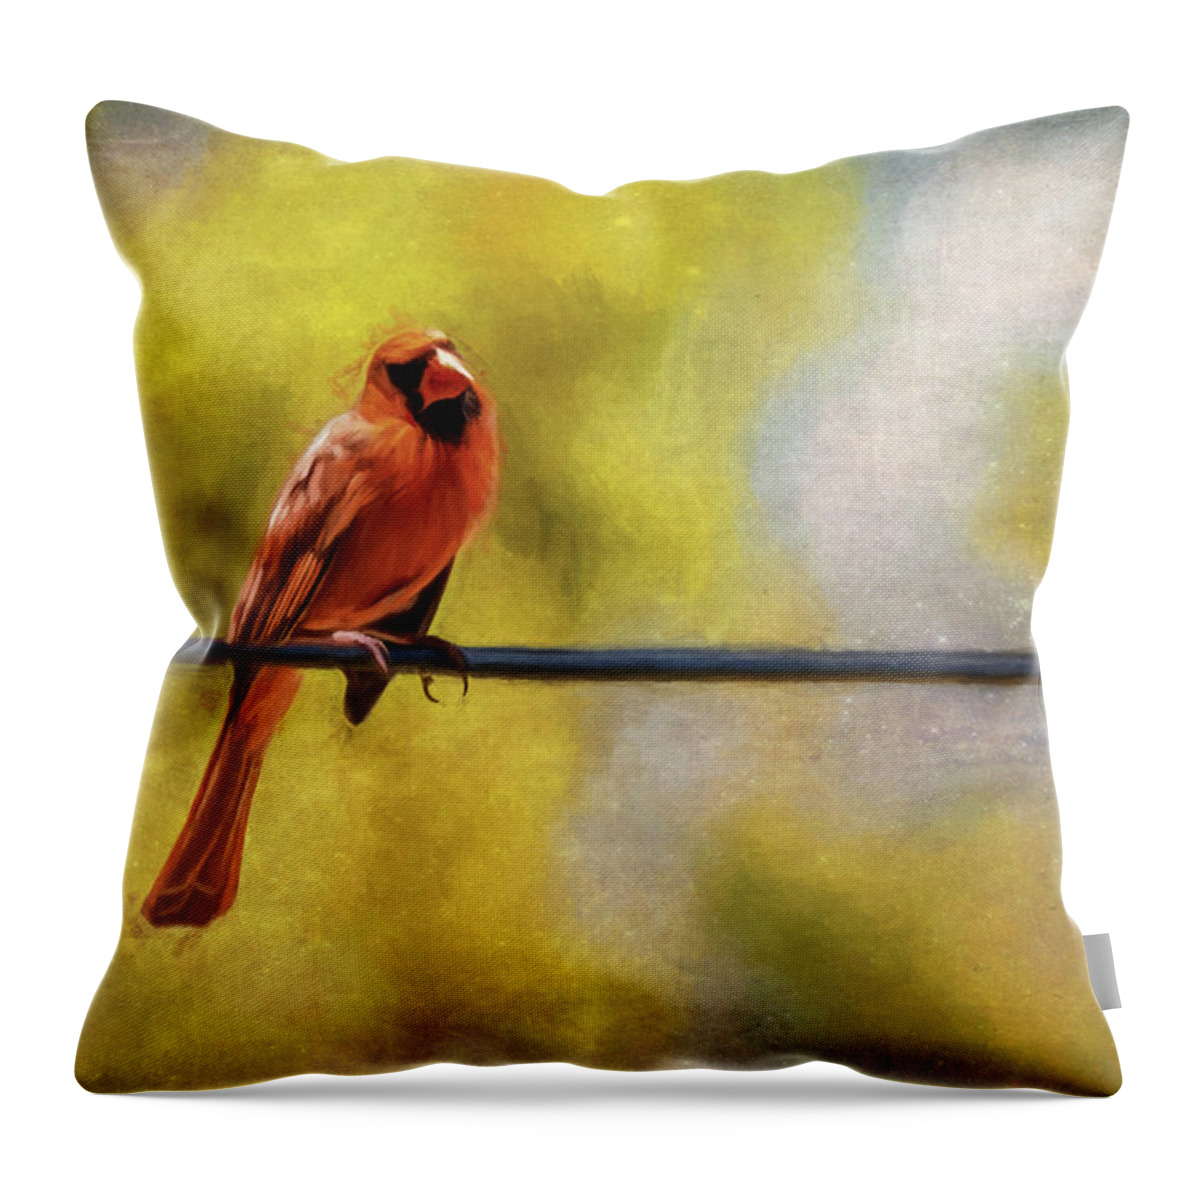 Cardinal Throw Pillow featuring the photograph Cardinal by Cathy Kovarik